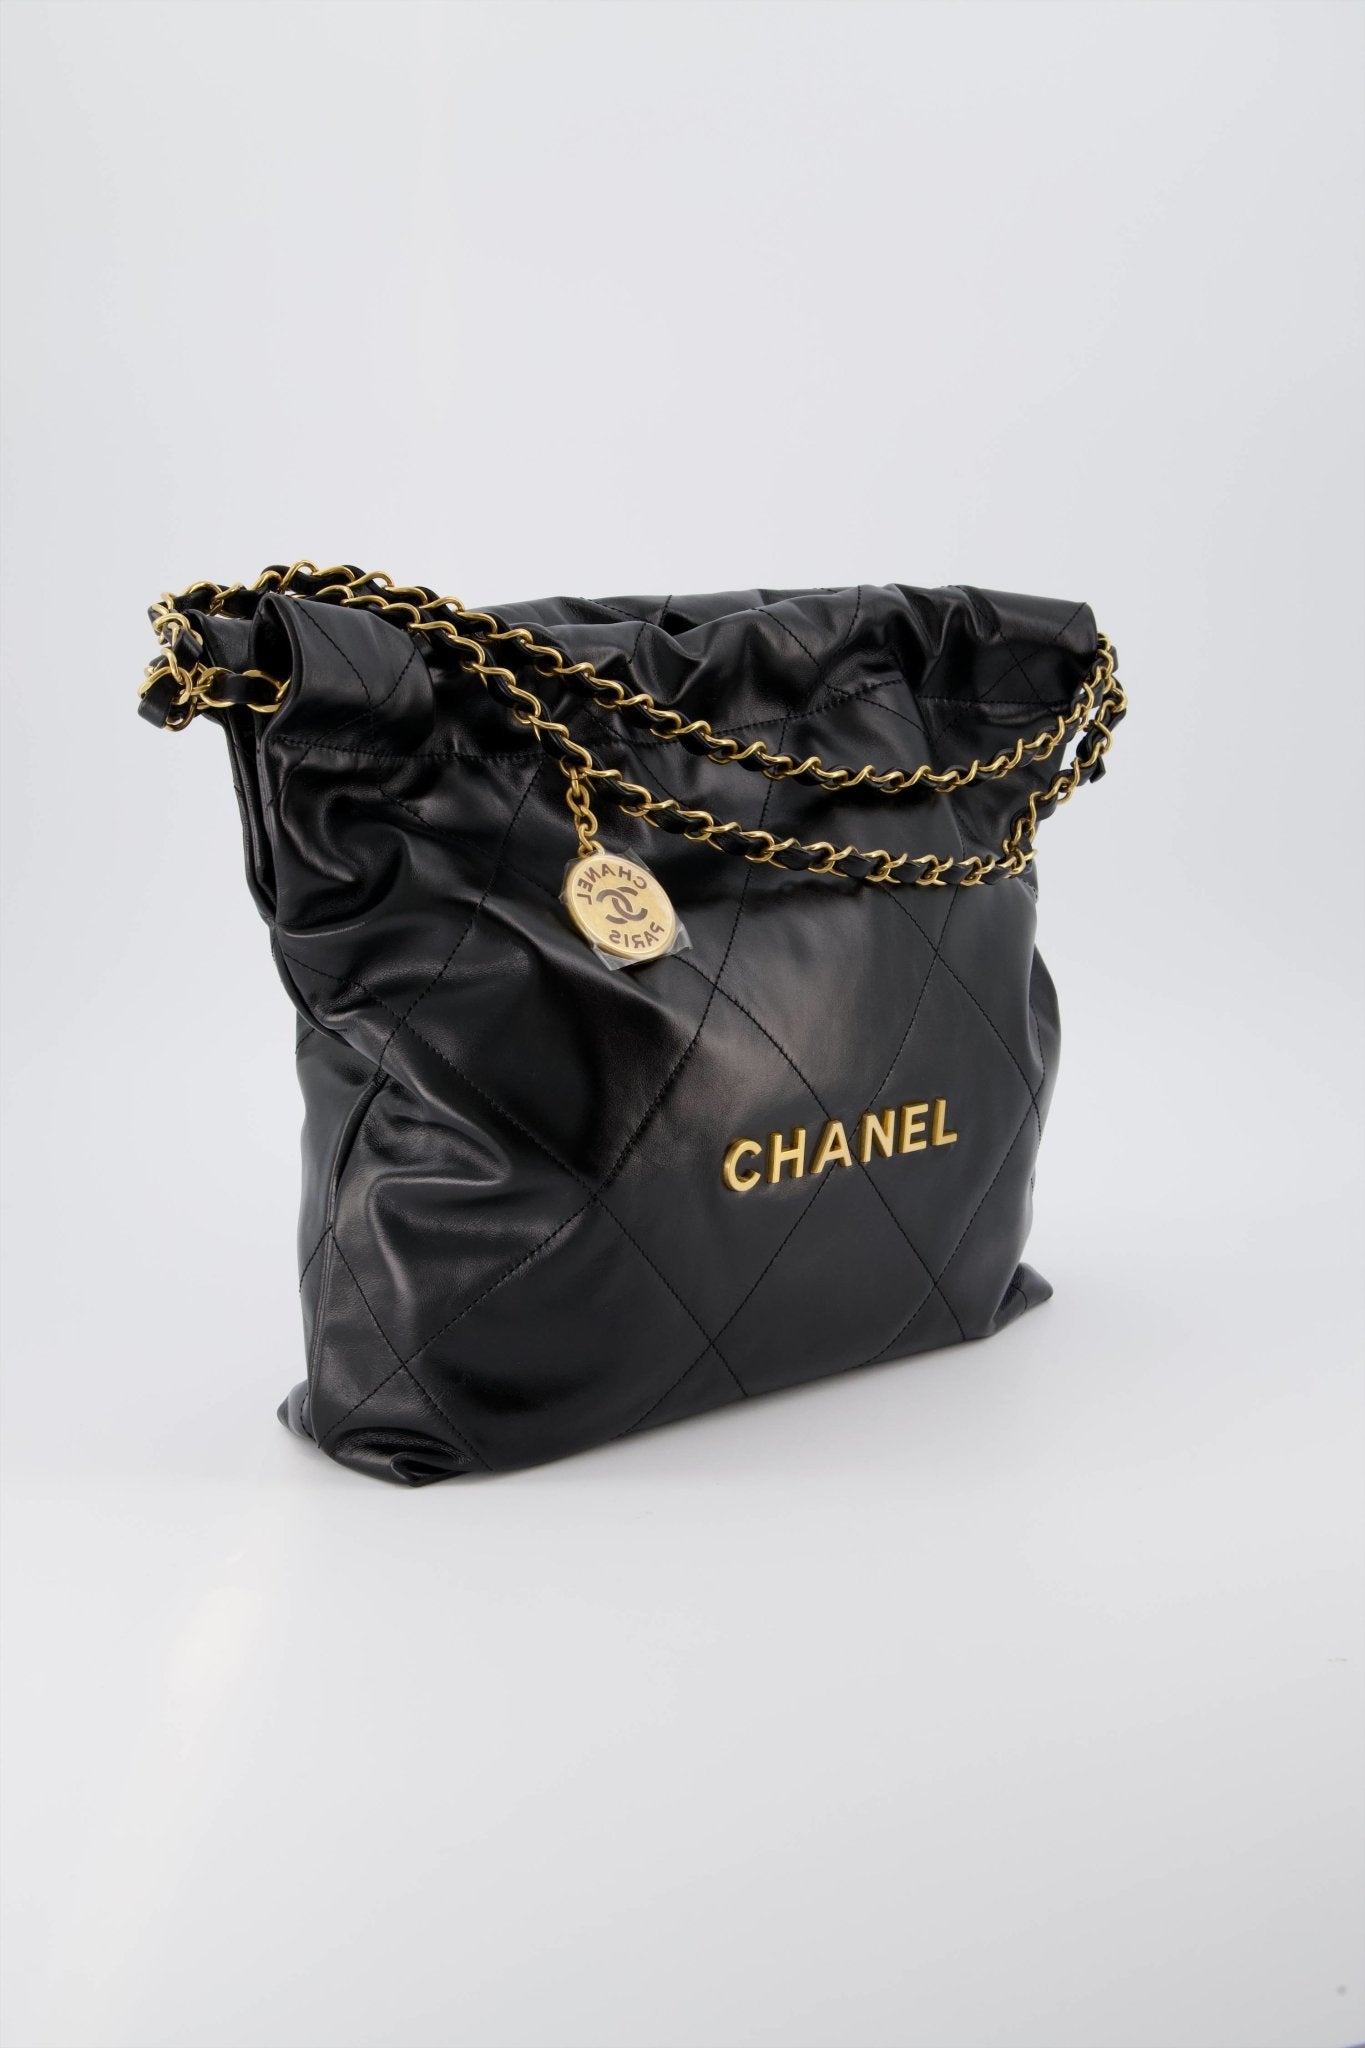 The CHANEL 22 bag